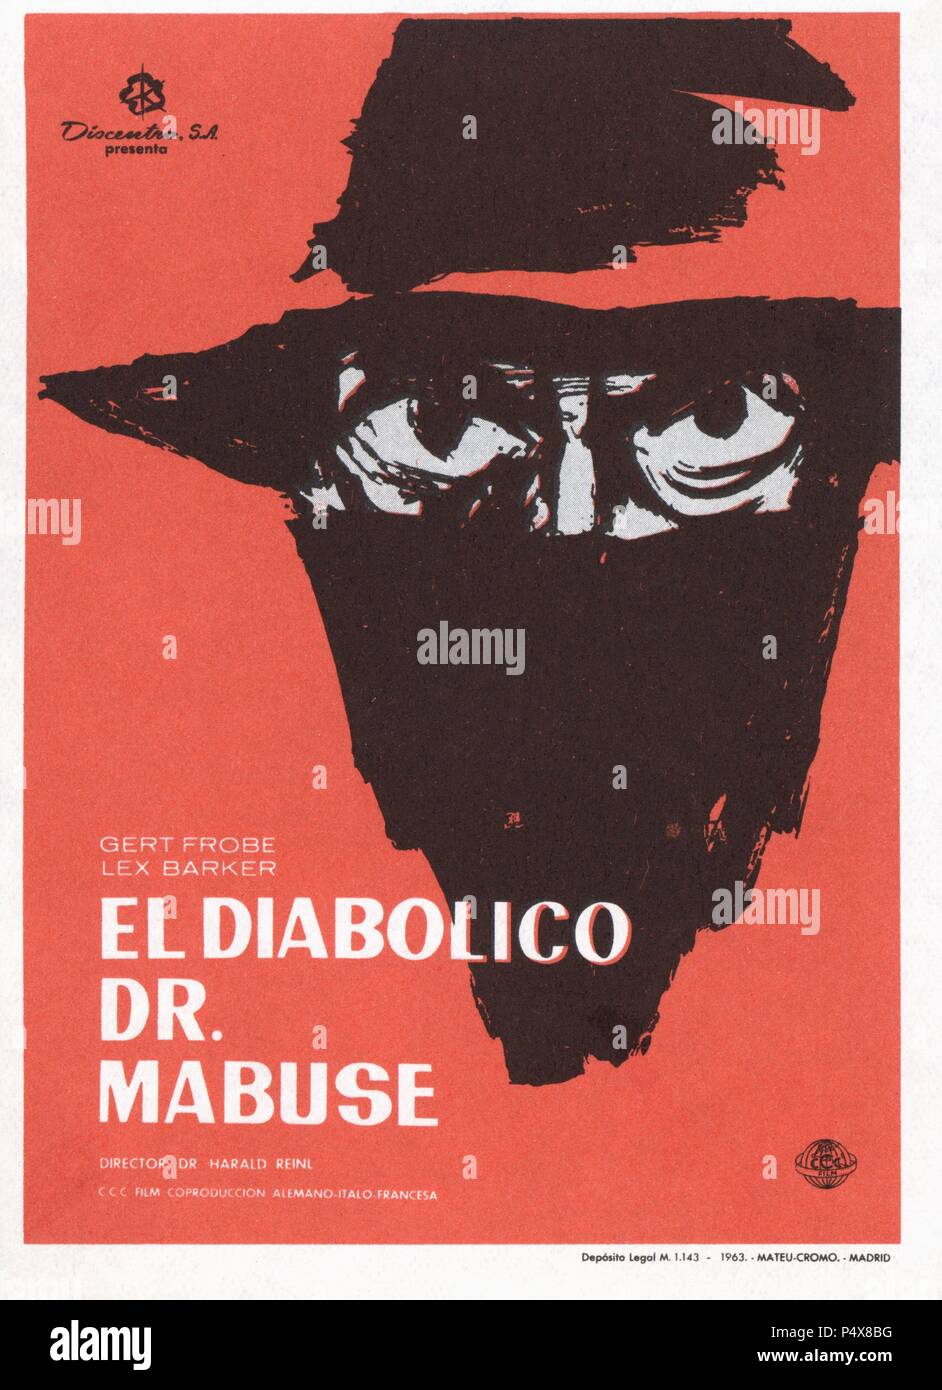 Cartel de la película El Diabólico Dr. Mabuse, con Gert Frobe y Lex Barker, dirigida por Harald Reiml. Alemania, ano 1961. Stock Photo